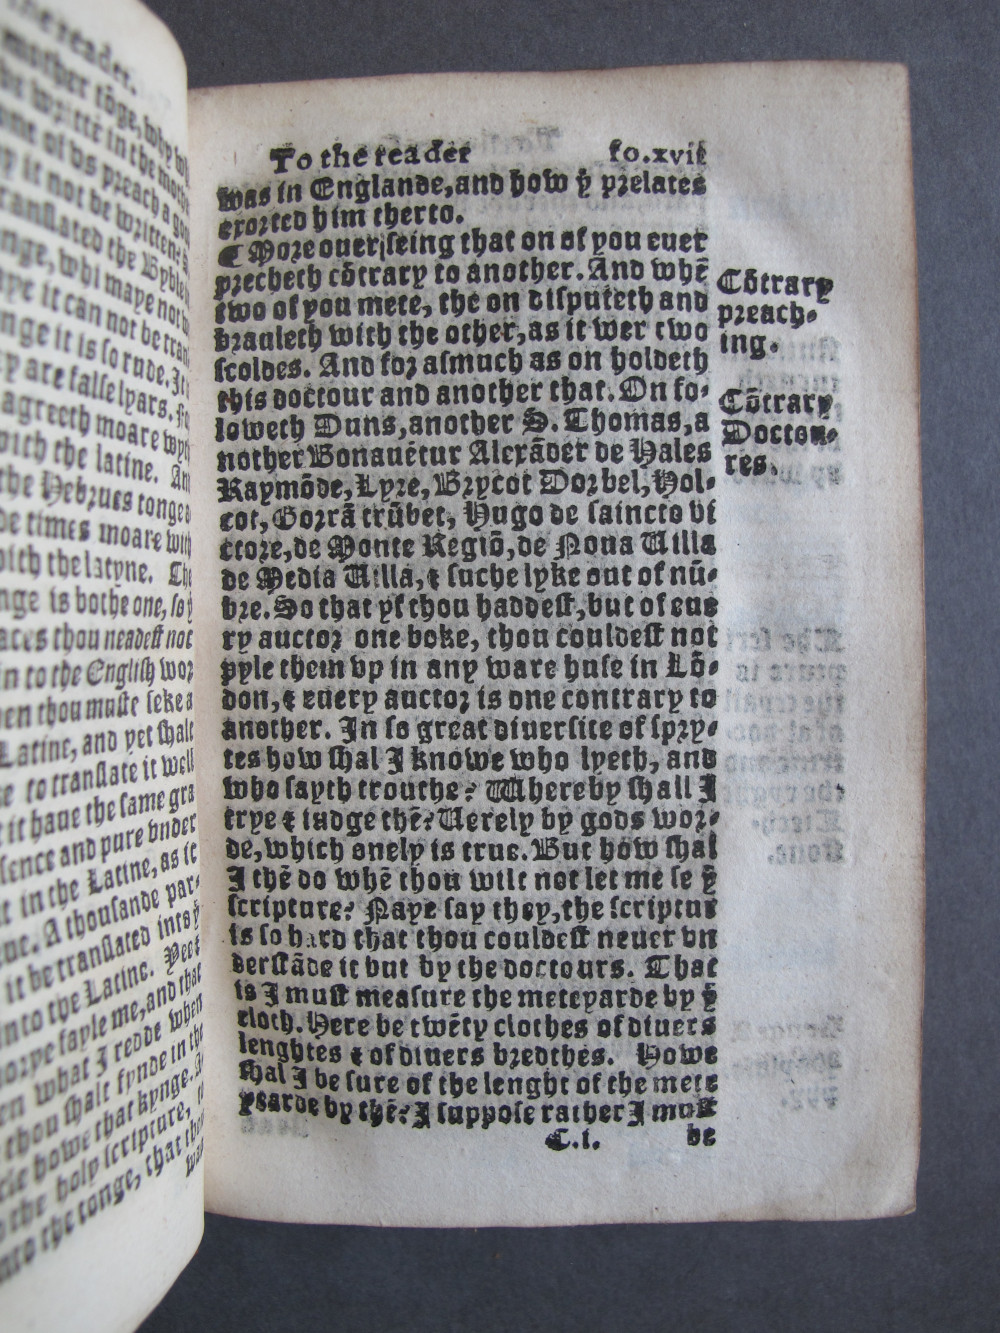 1 Folio C1 recto